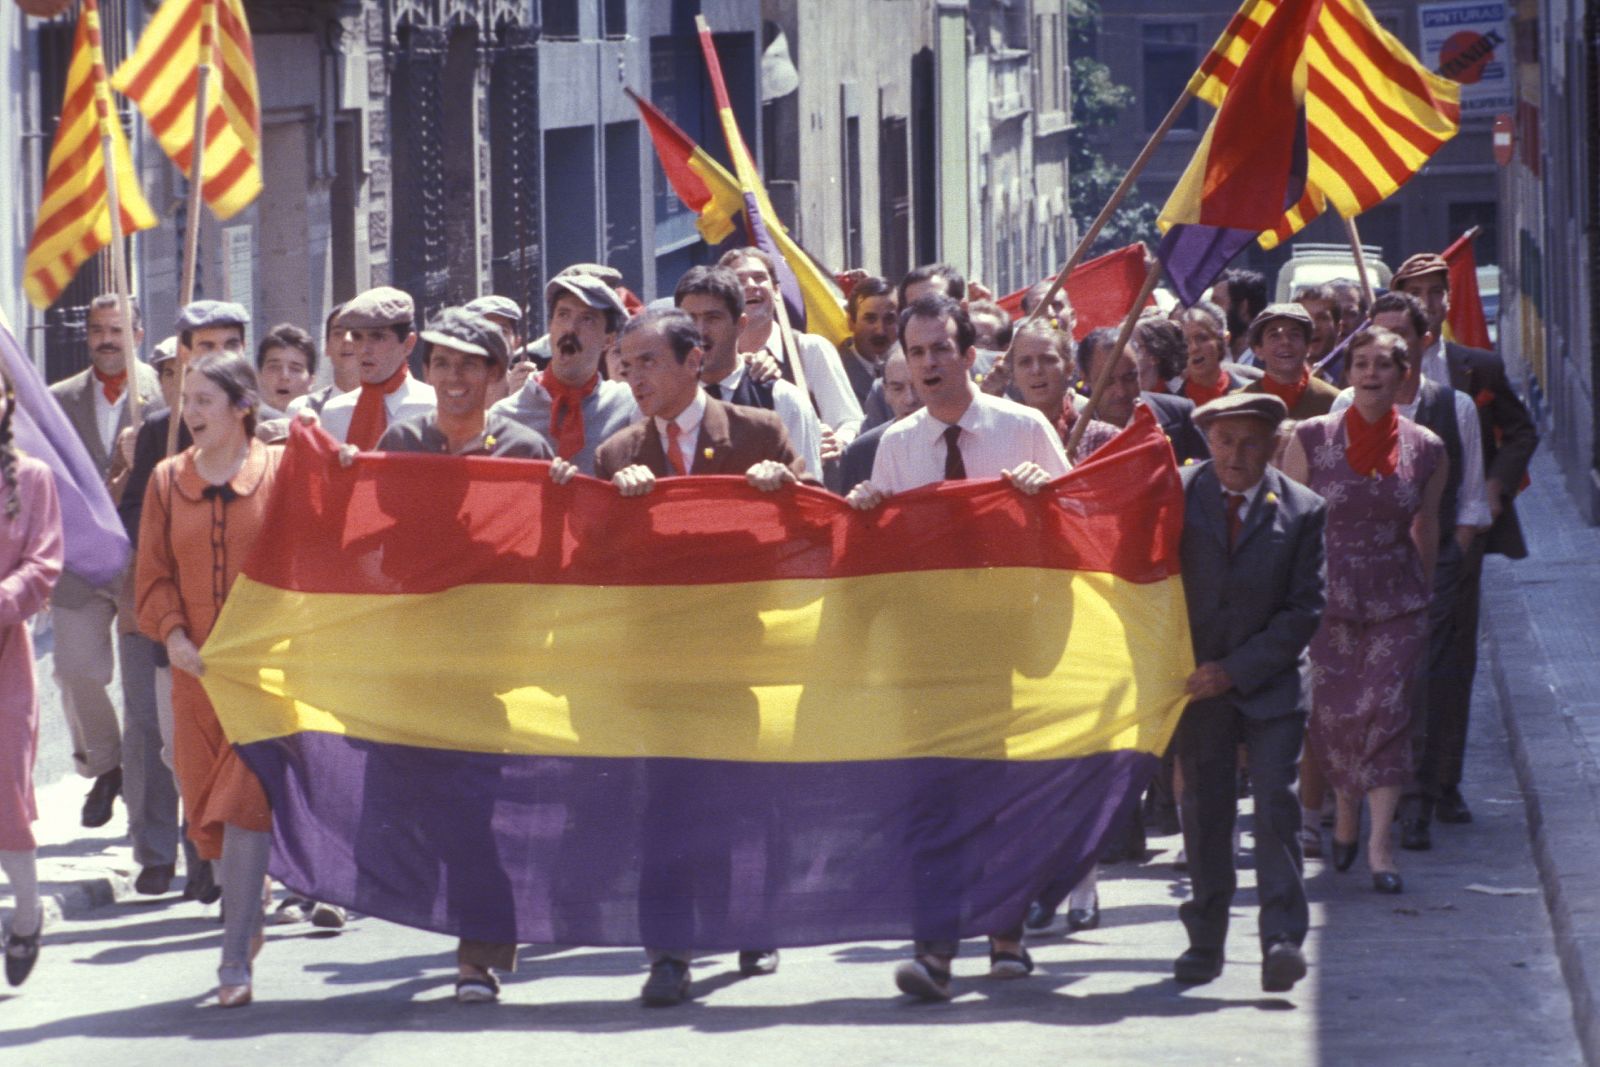 La serie "La plaza del Diamante" retrata la sociedad catalana desde 1928 hasta la posguerra